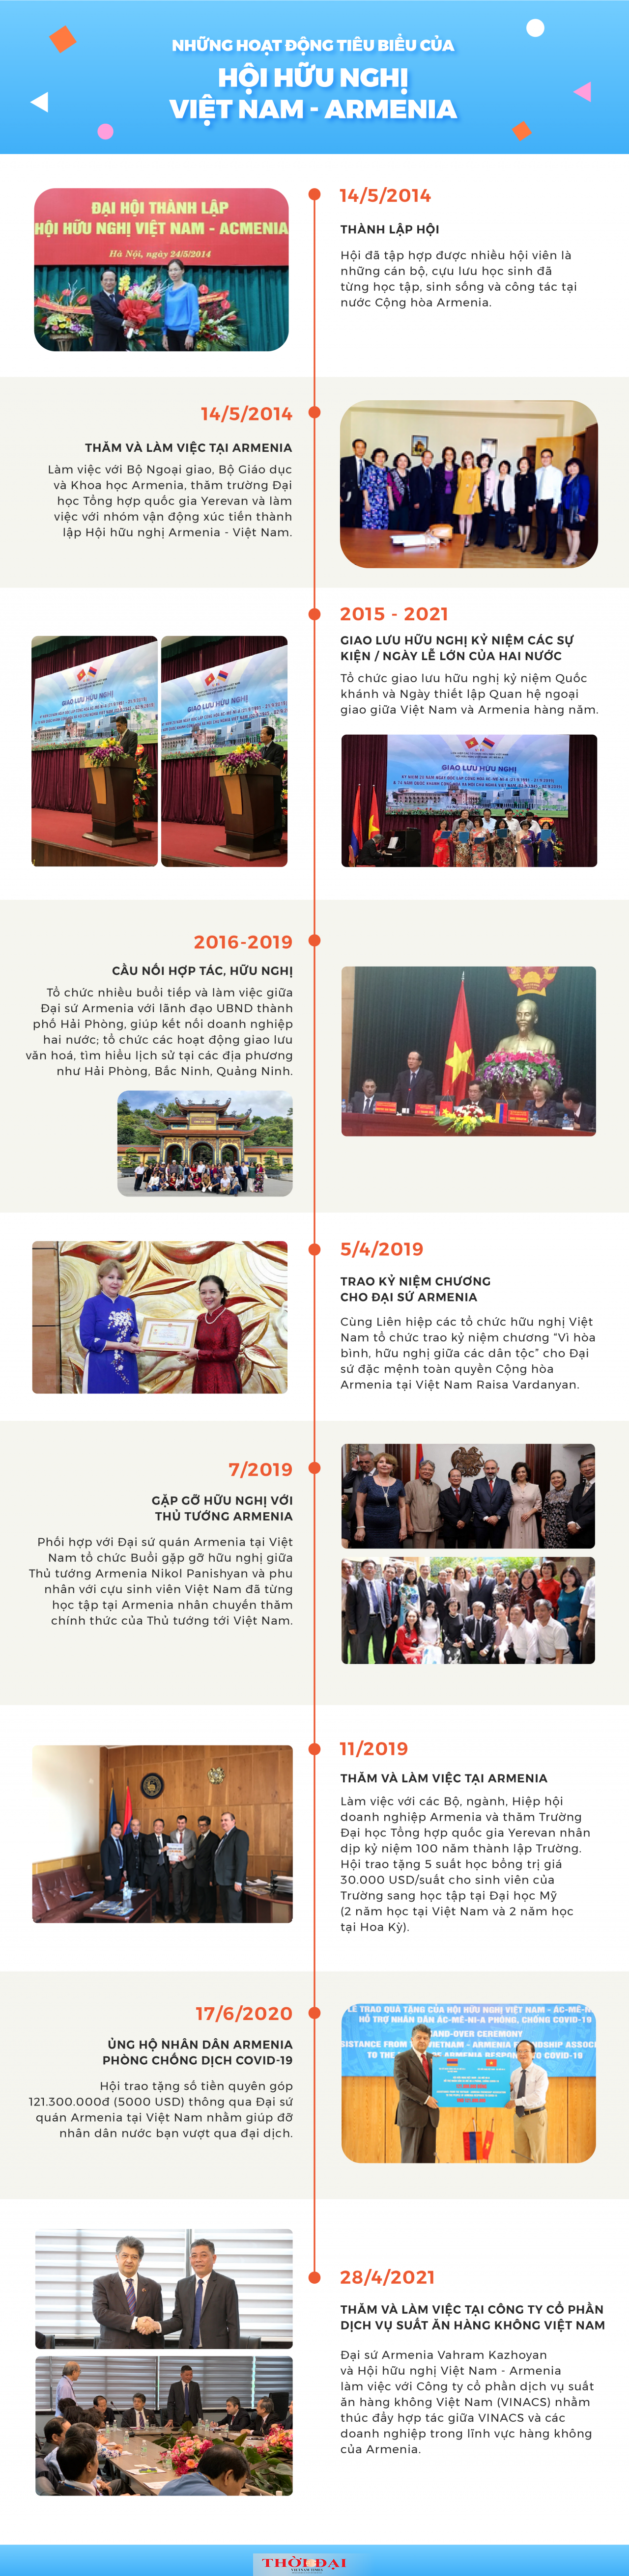 Hội hữu nghị Việt Nam- Armenia: Hành trình 7 năm xây đắp quan hệ hữu nghị hai nước